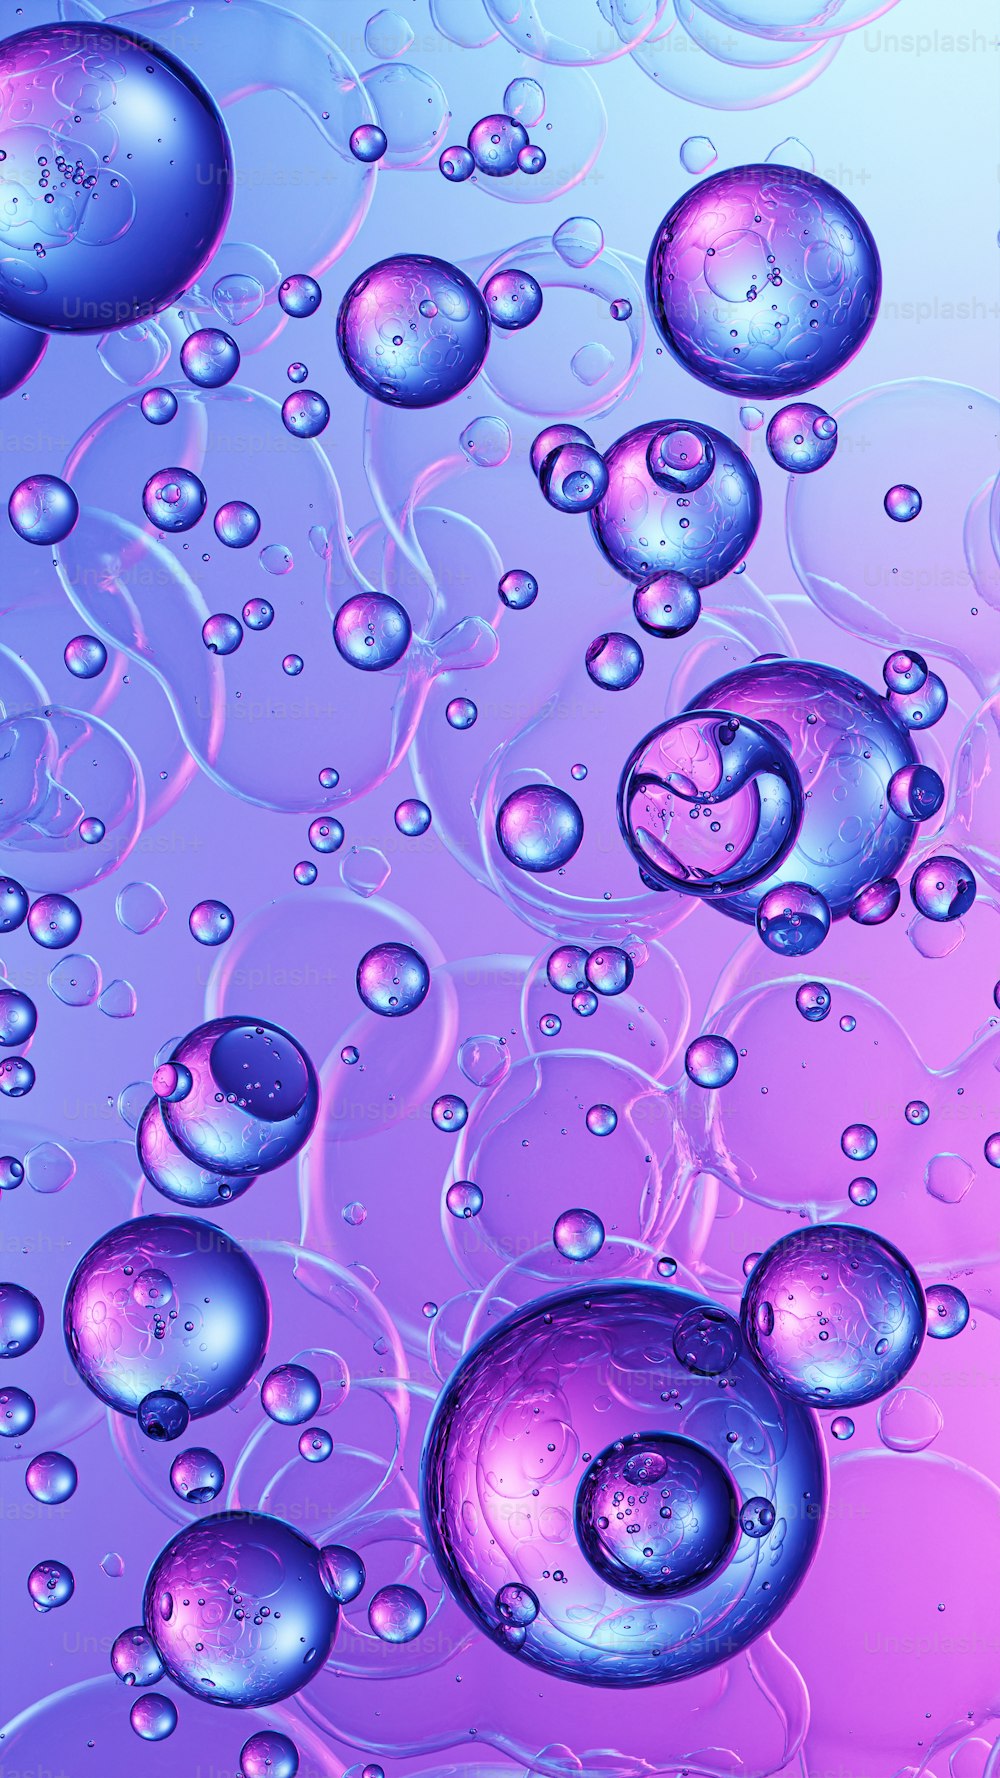 Un primer plano de burbujas de agua sobre un fondo púrpura